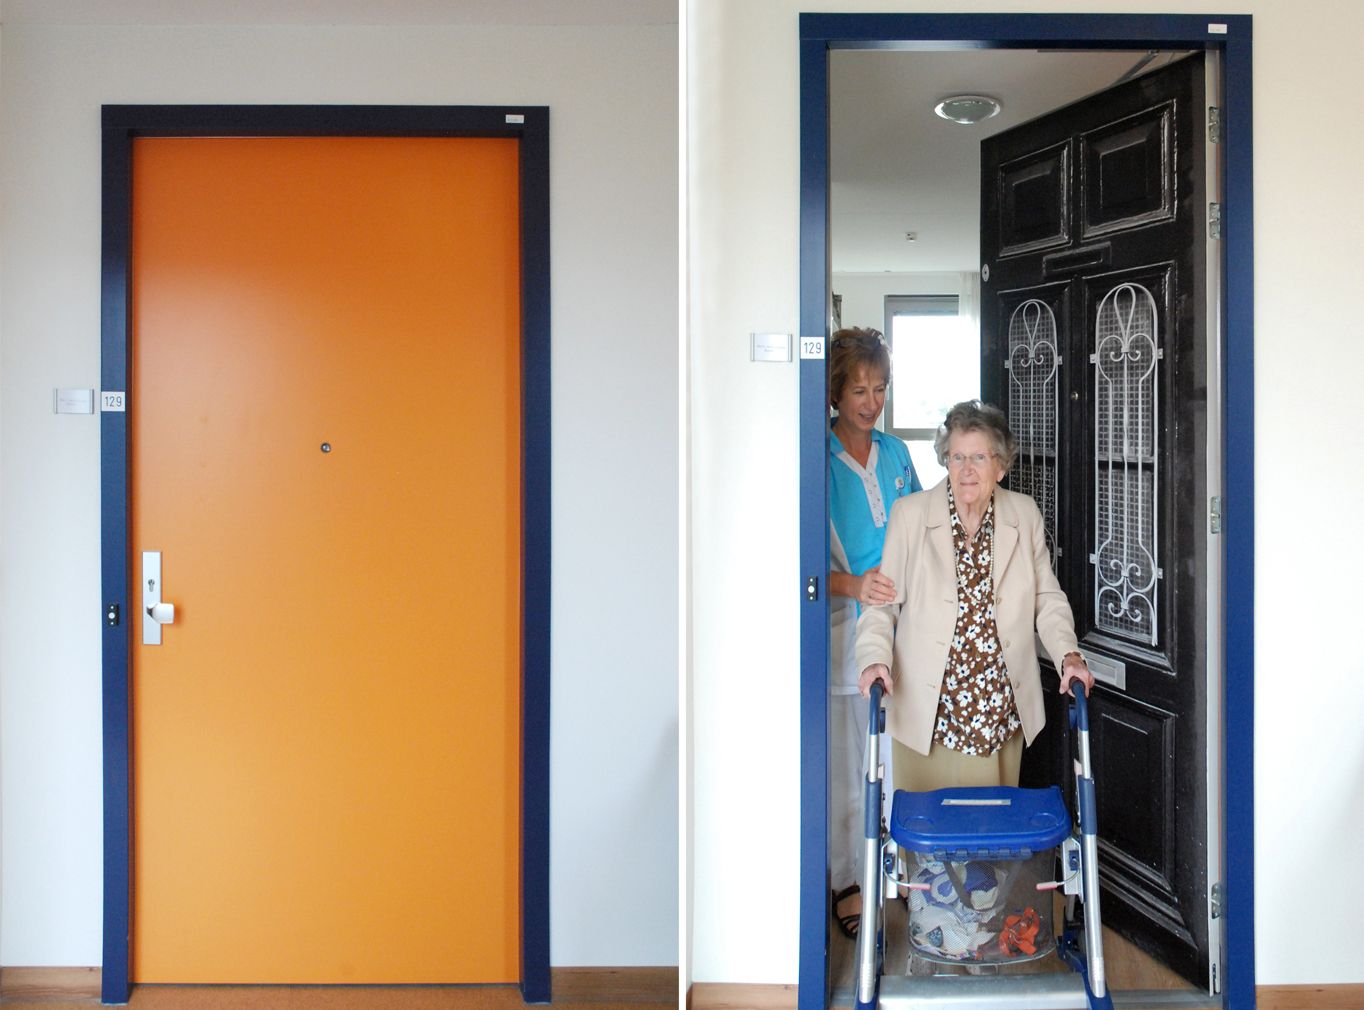 Door Wallpaper at Nursing Home - Door Makeovers Help Dementia Patients